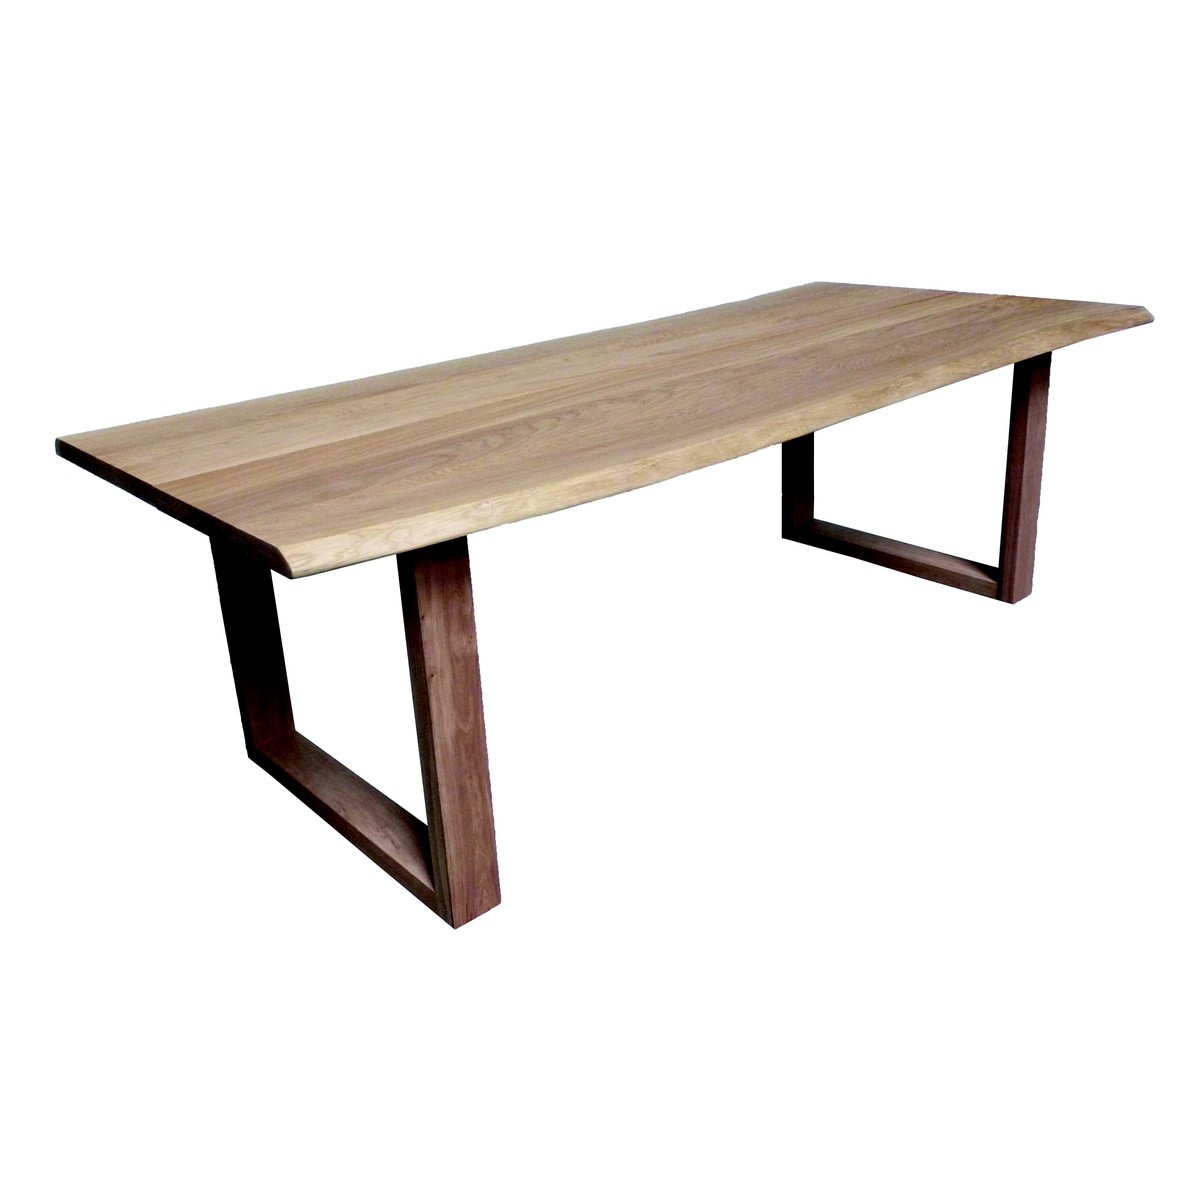   Table haute Kent Trunk ouverte rectangulaire  160x100x90cm